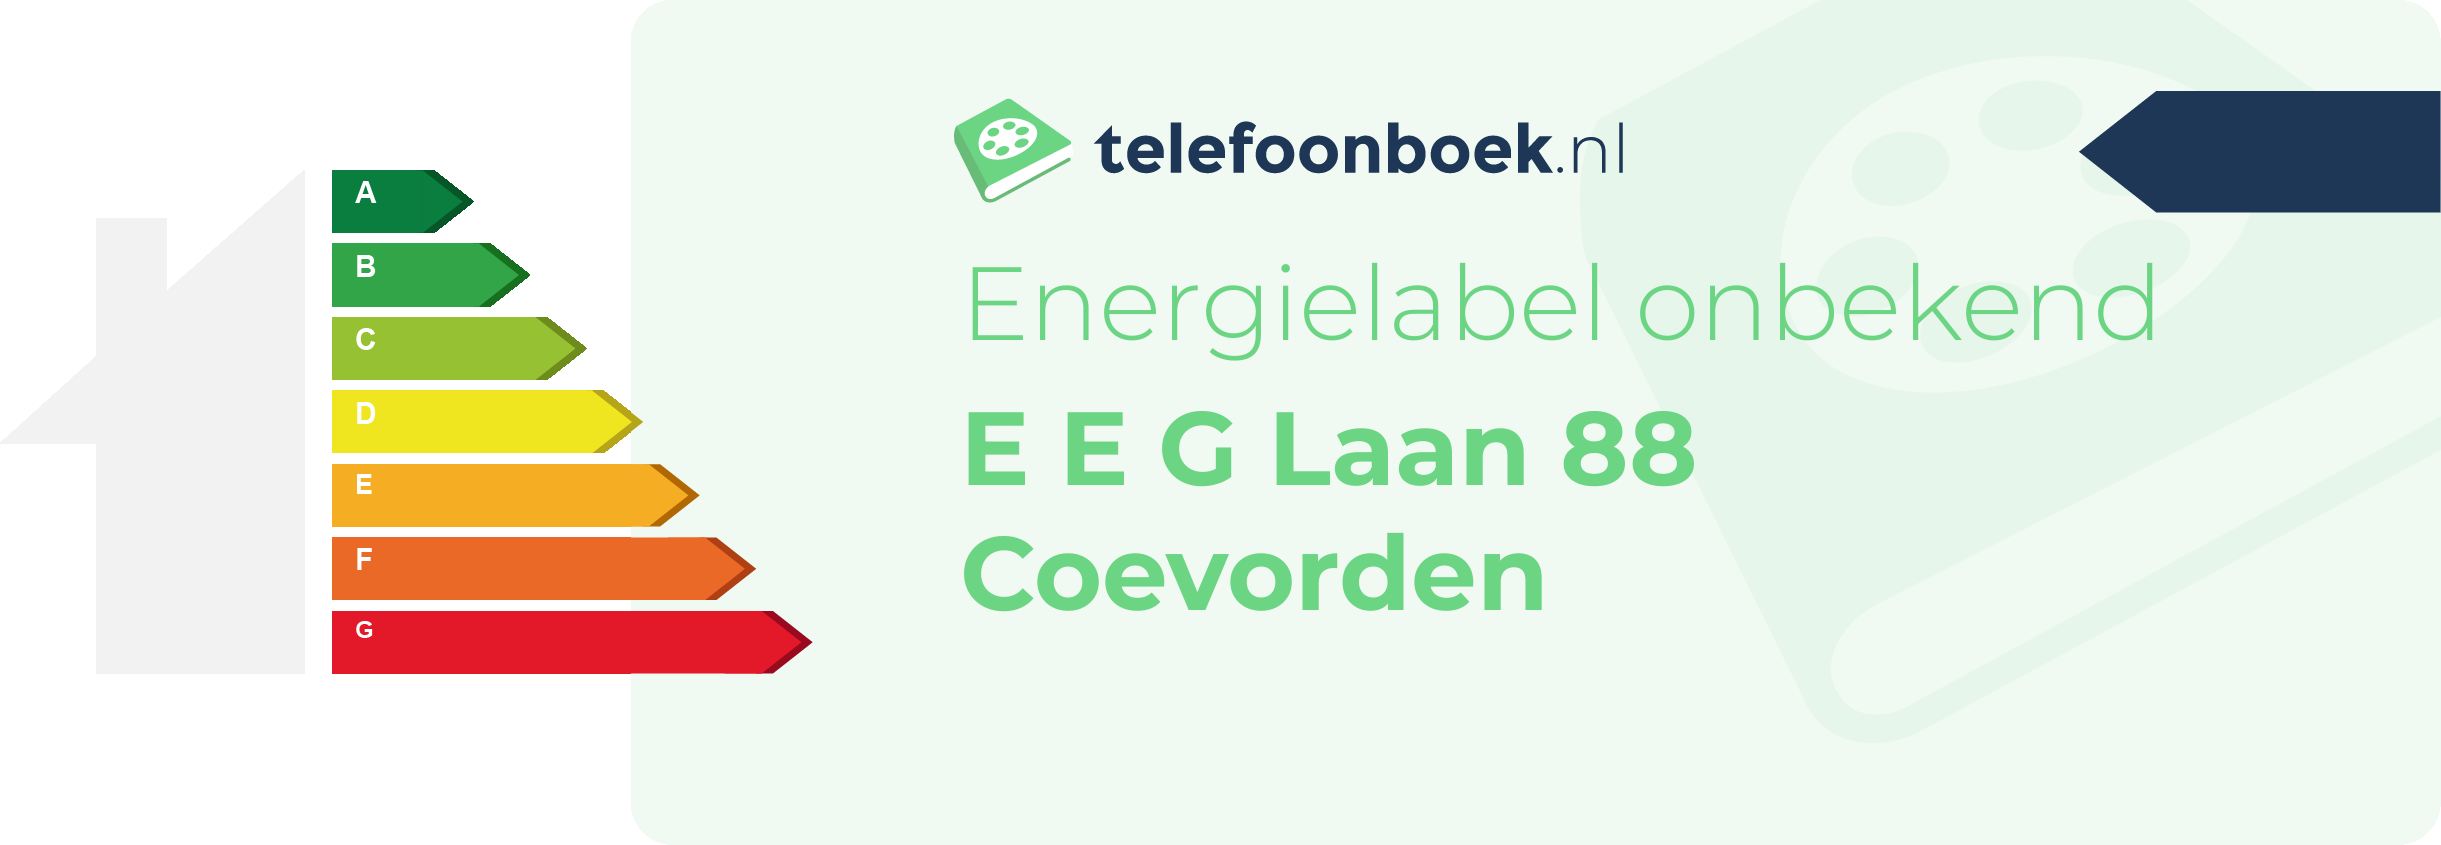 Energielabel E E G Laan 88 Coevorden